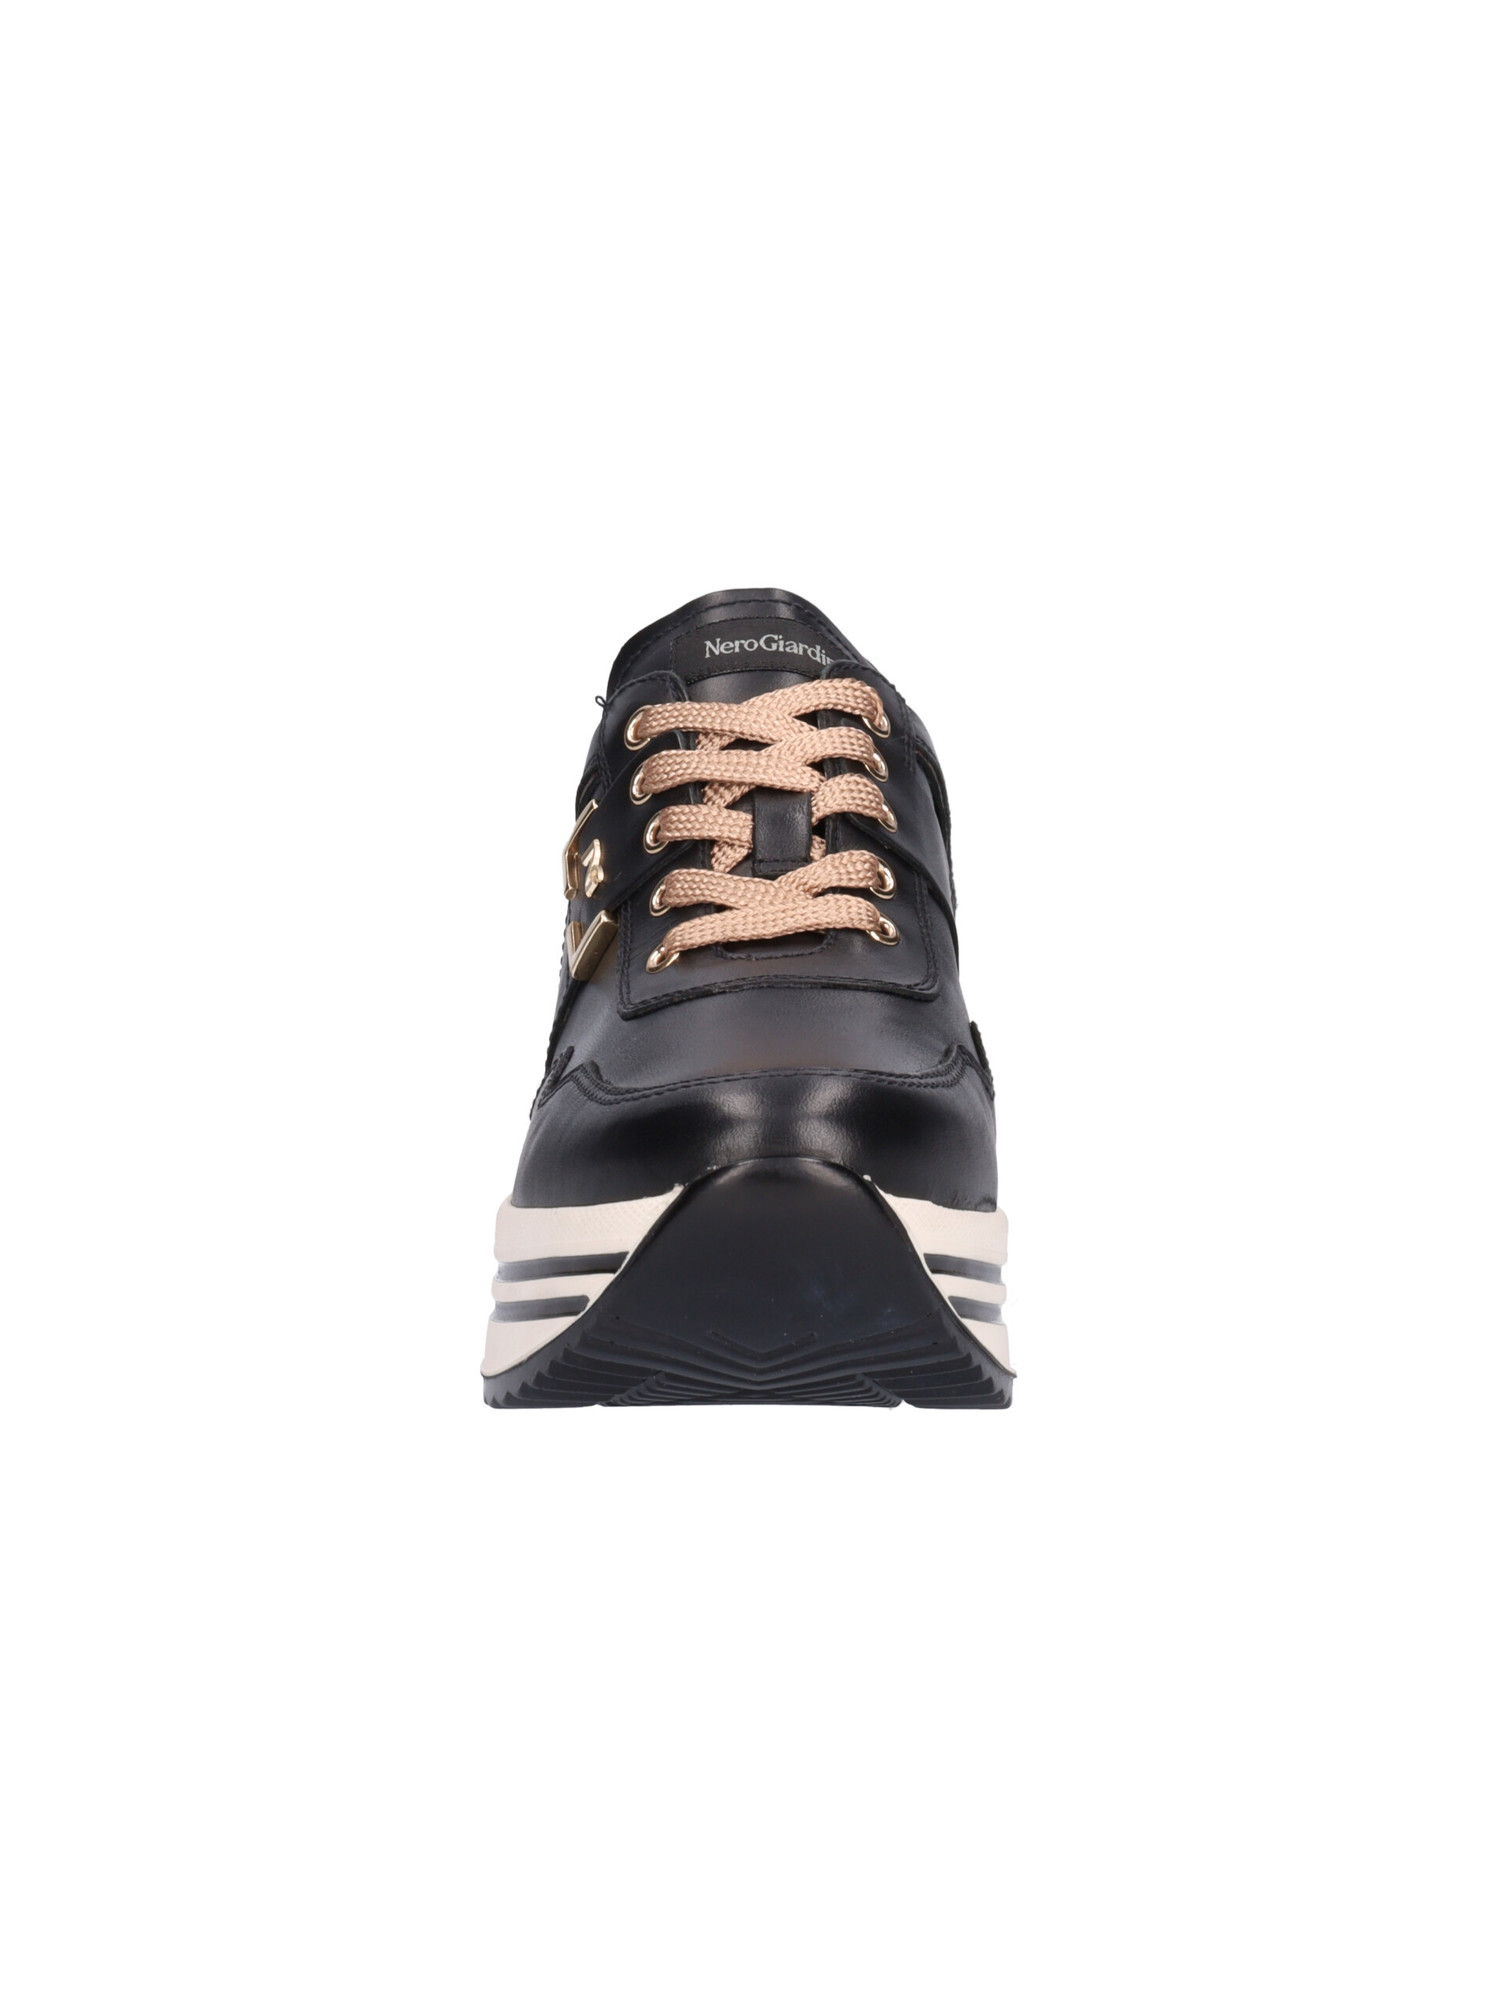 sneaker-platform-nero-giardini-da-donna-nera-f9aacc